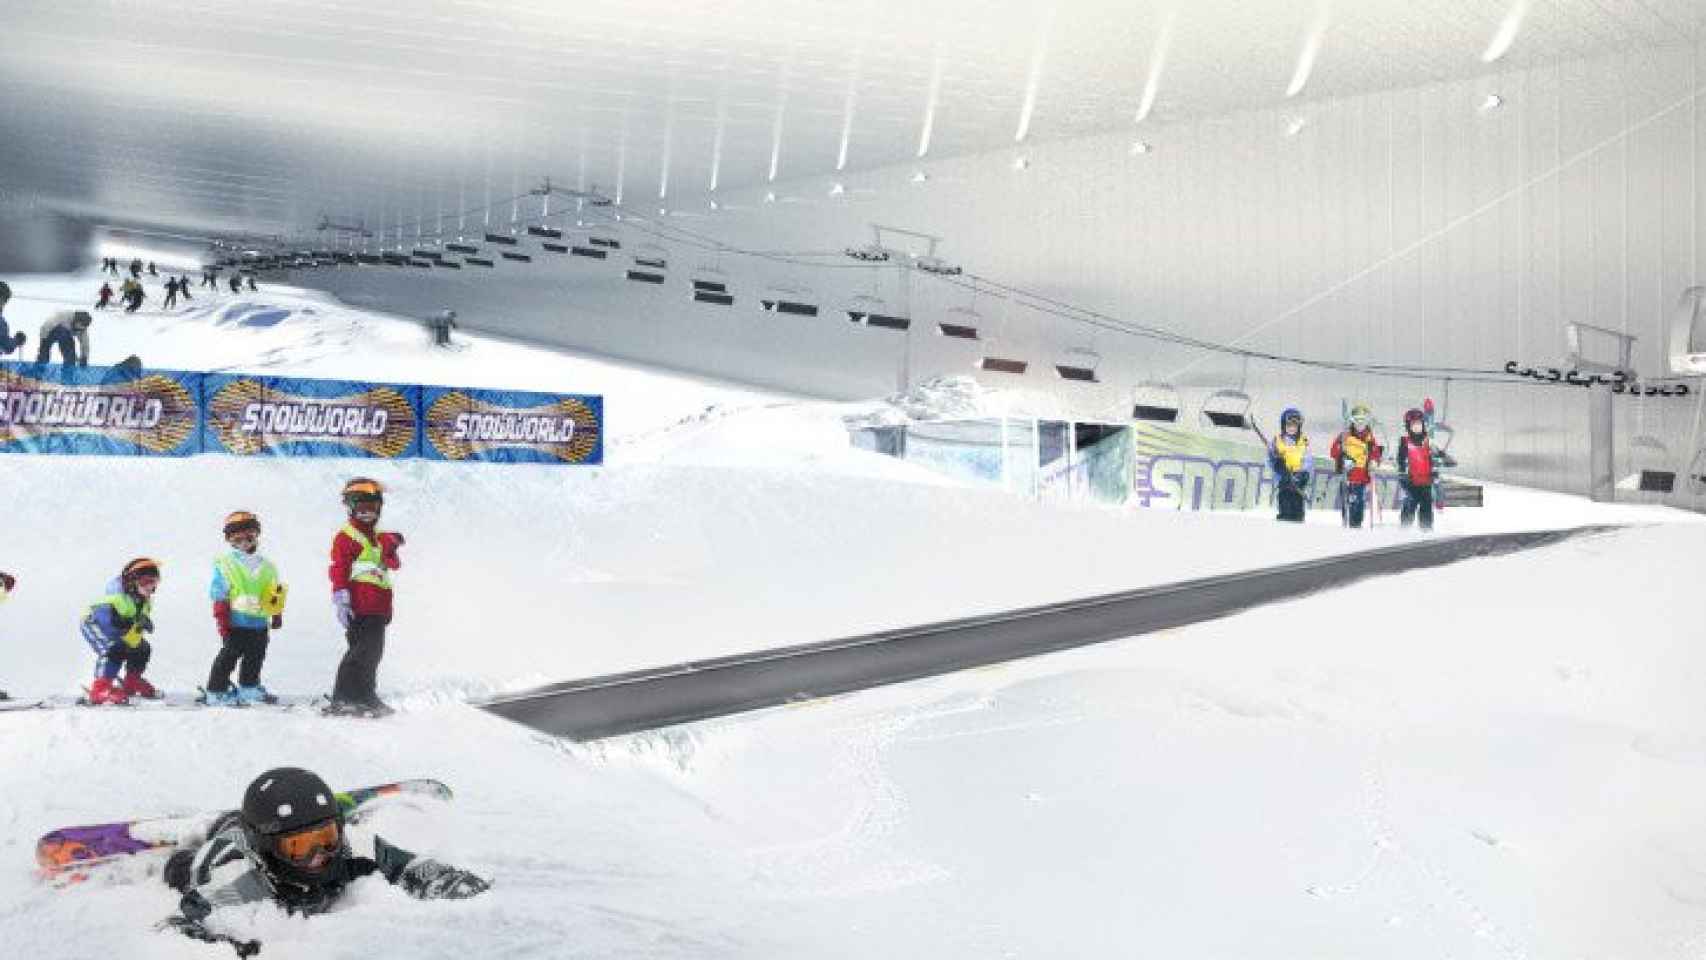 Imagen virtual del interior de las pistas de esquí / Snowworld